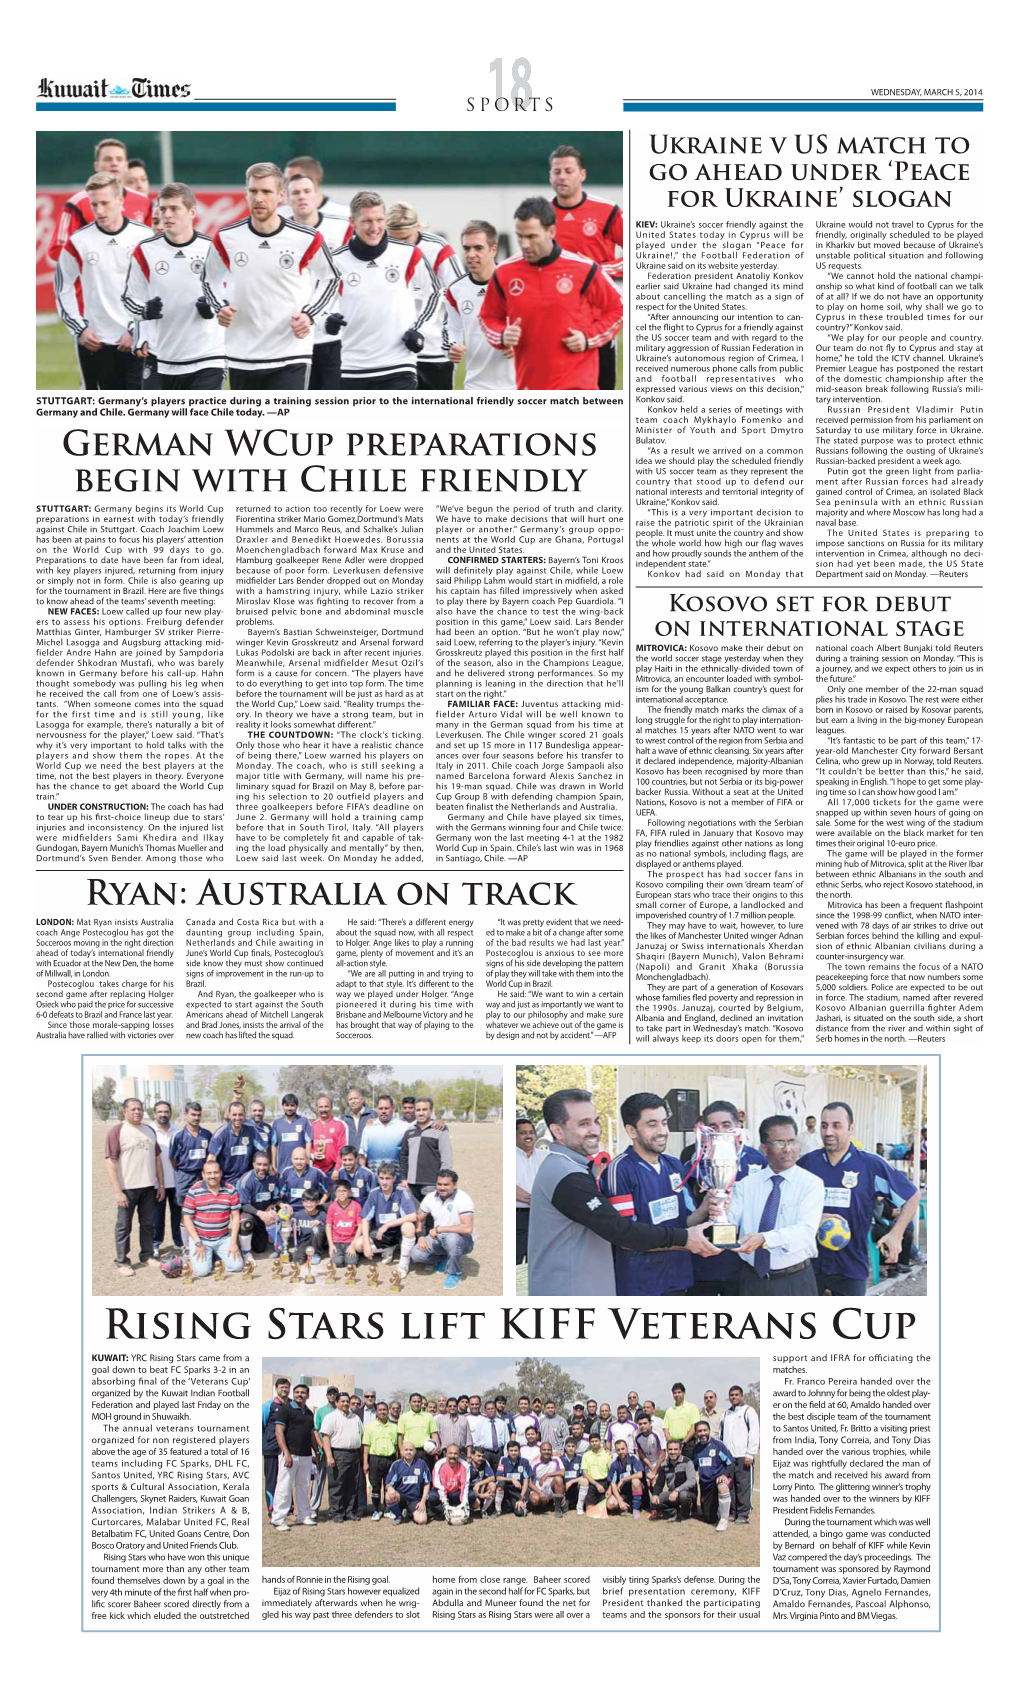 Rising Stars Lift KIFF Veterans Cup